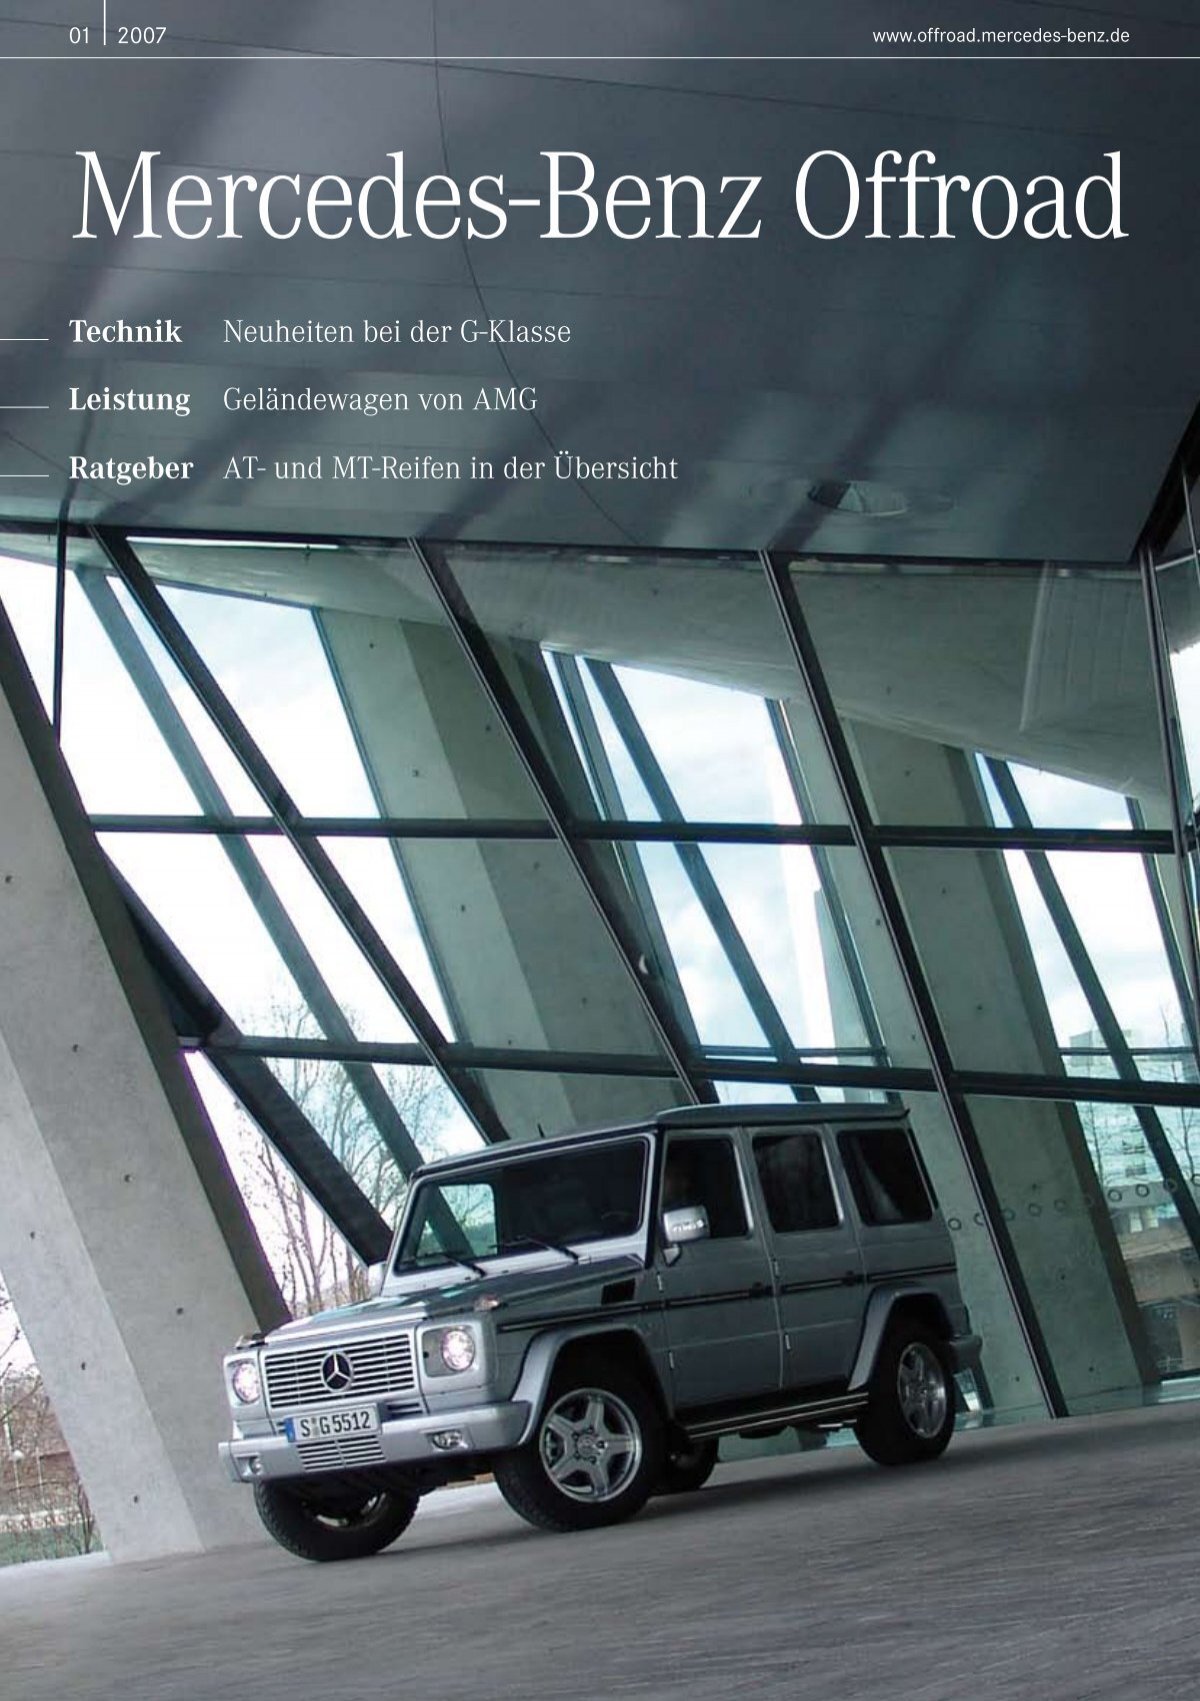 Mercedes-Benz erlebt starke Nachfrage, Absatz bei High-End